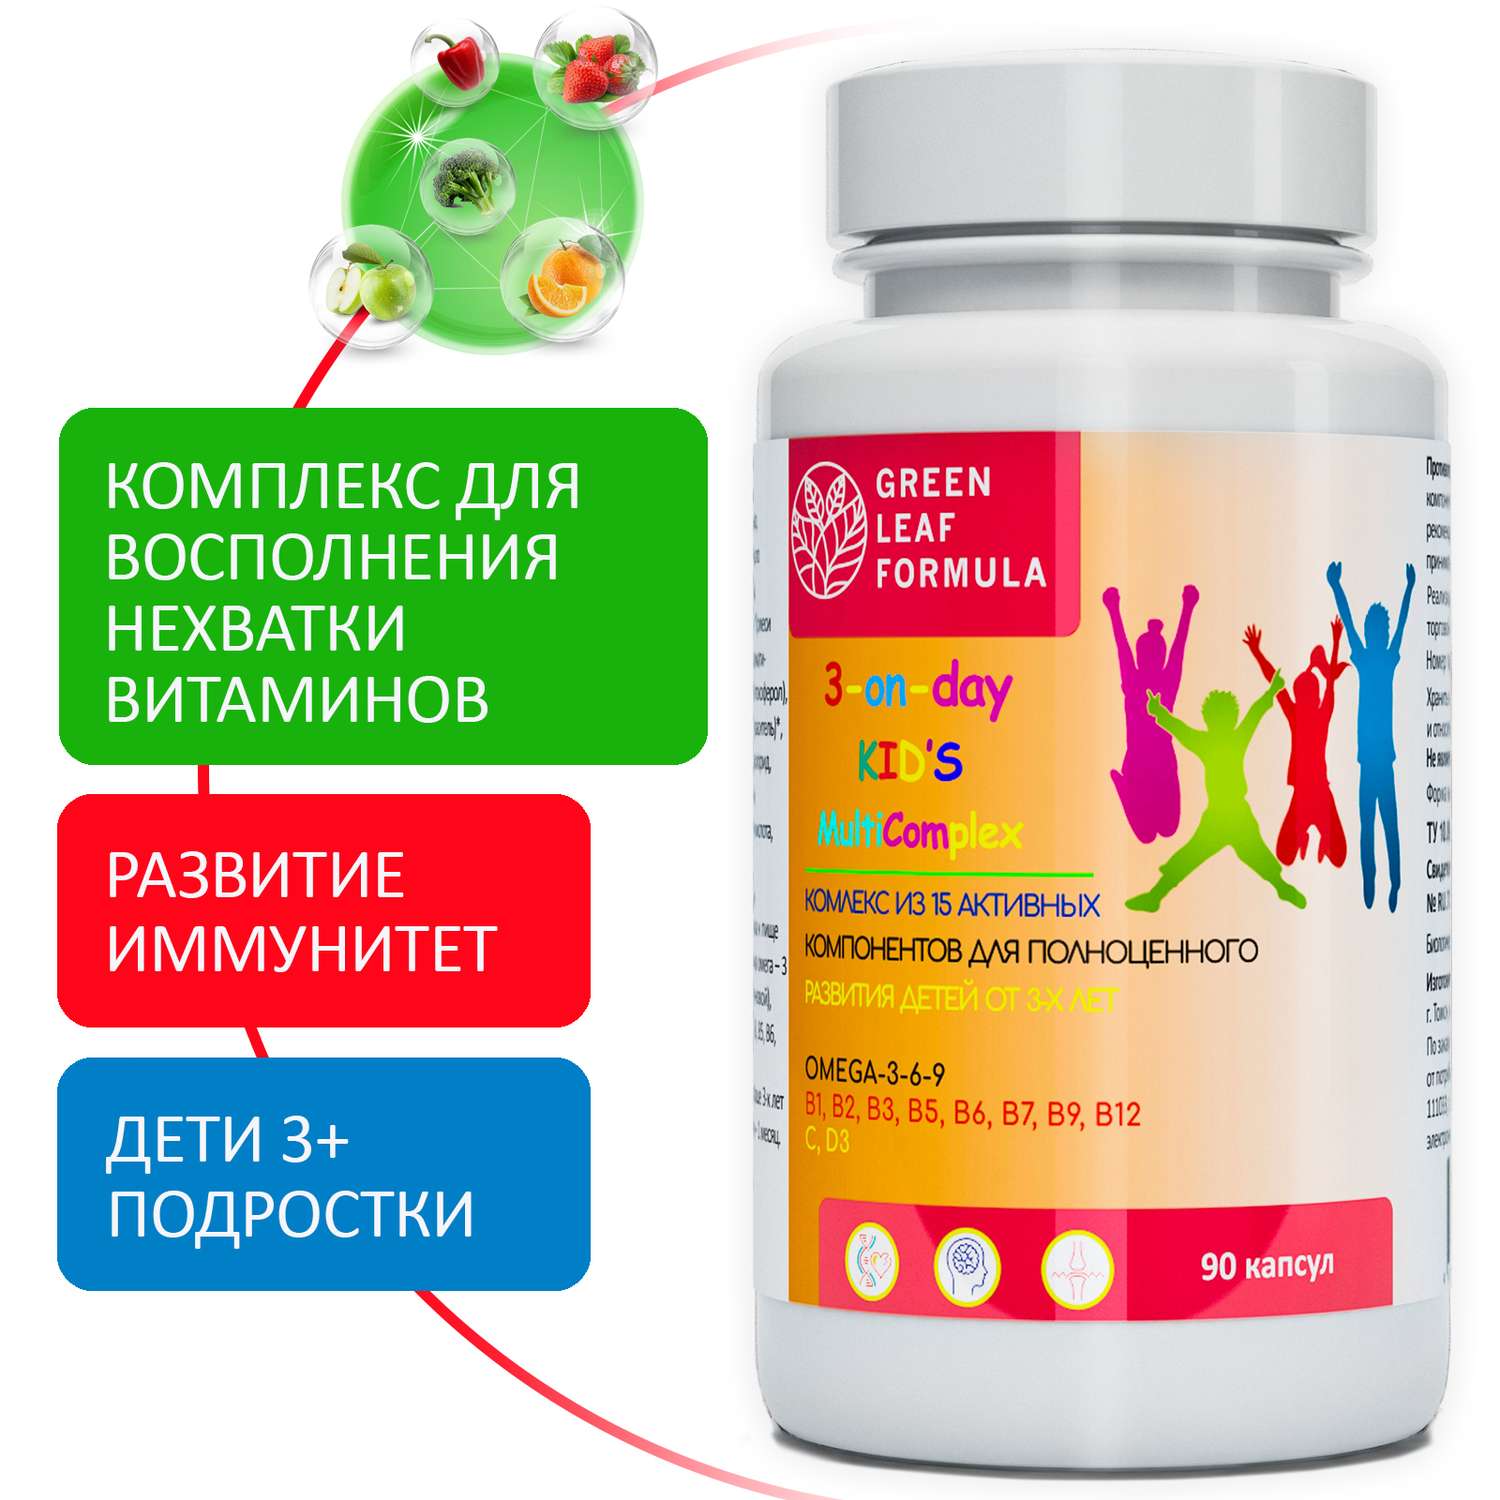 Детский мультикомплекс Green Leaf Formula омега 3-6-9 витамины B А Е D3 С 550 мг 90 капсул - фото 1